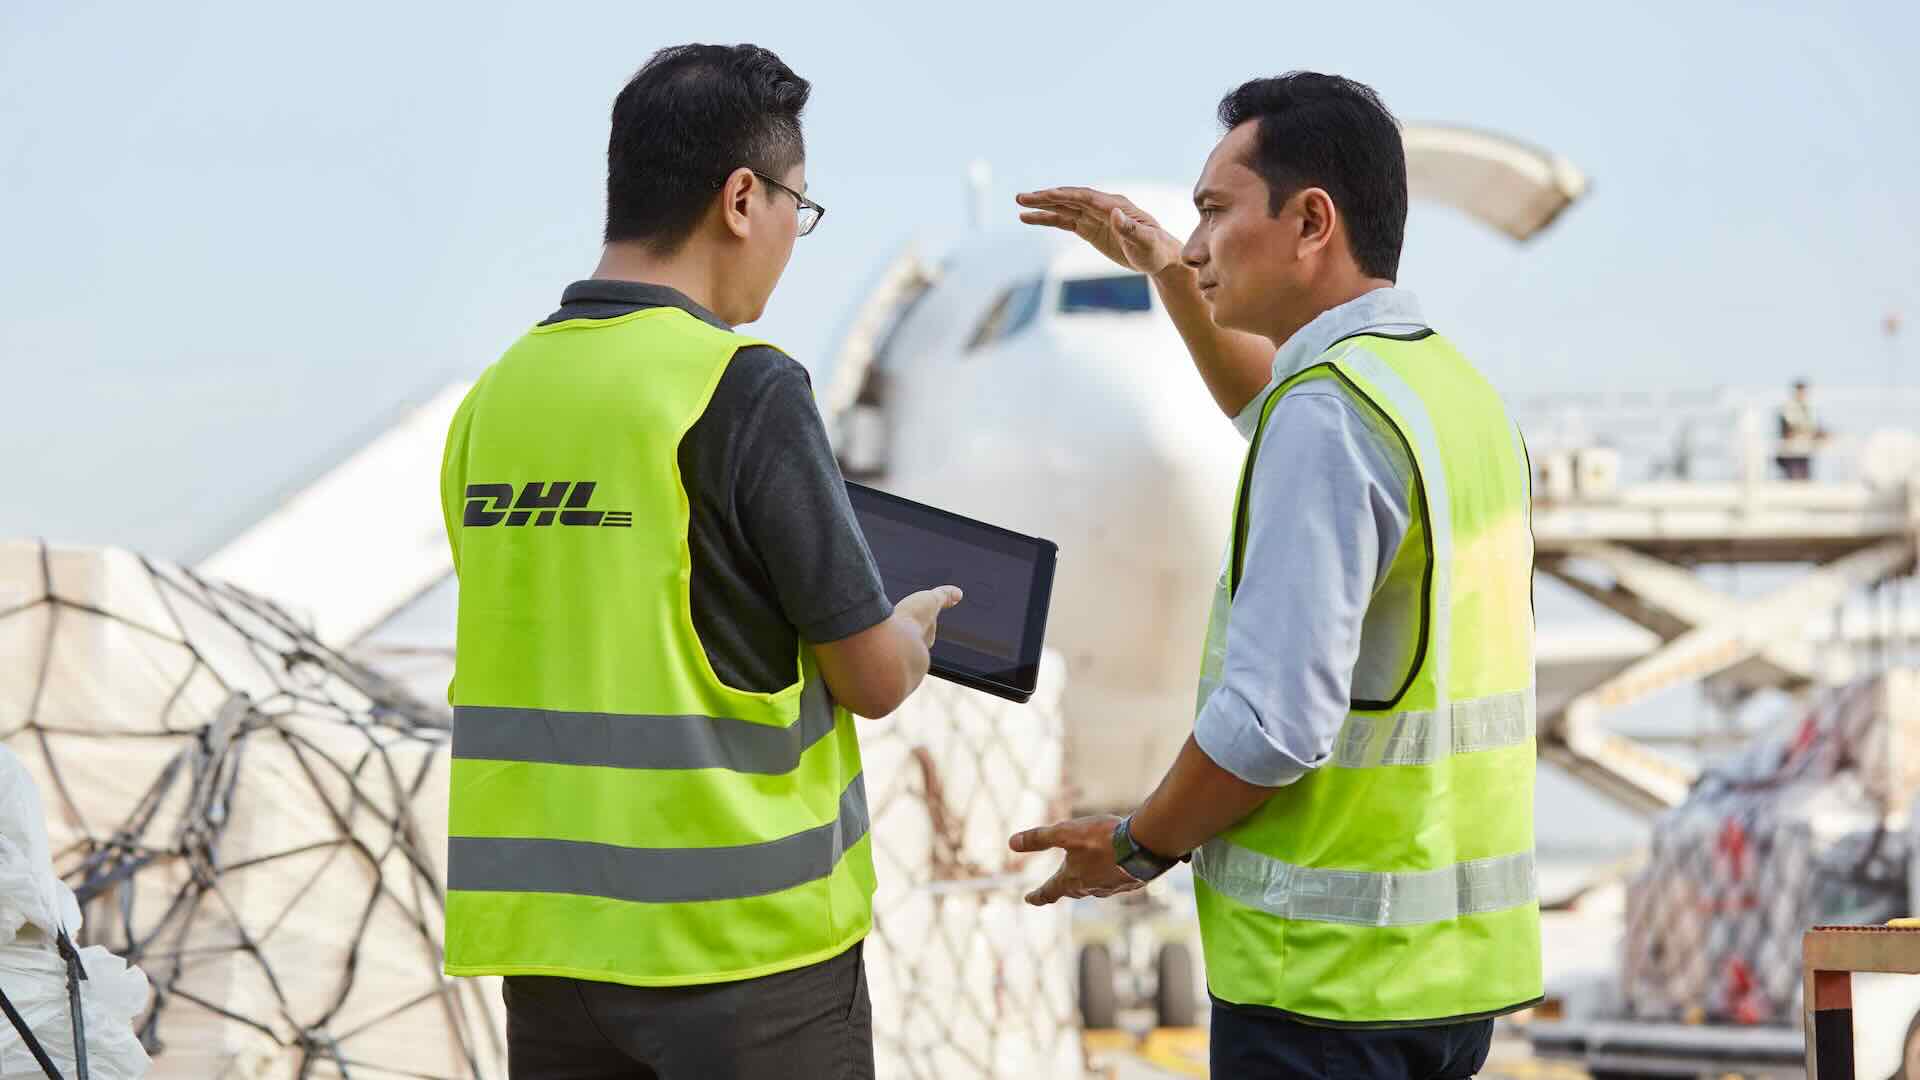 DHL e Prada trasporto aereo sostenibile con carburanti SAF